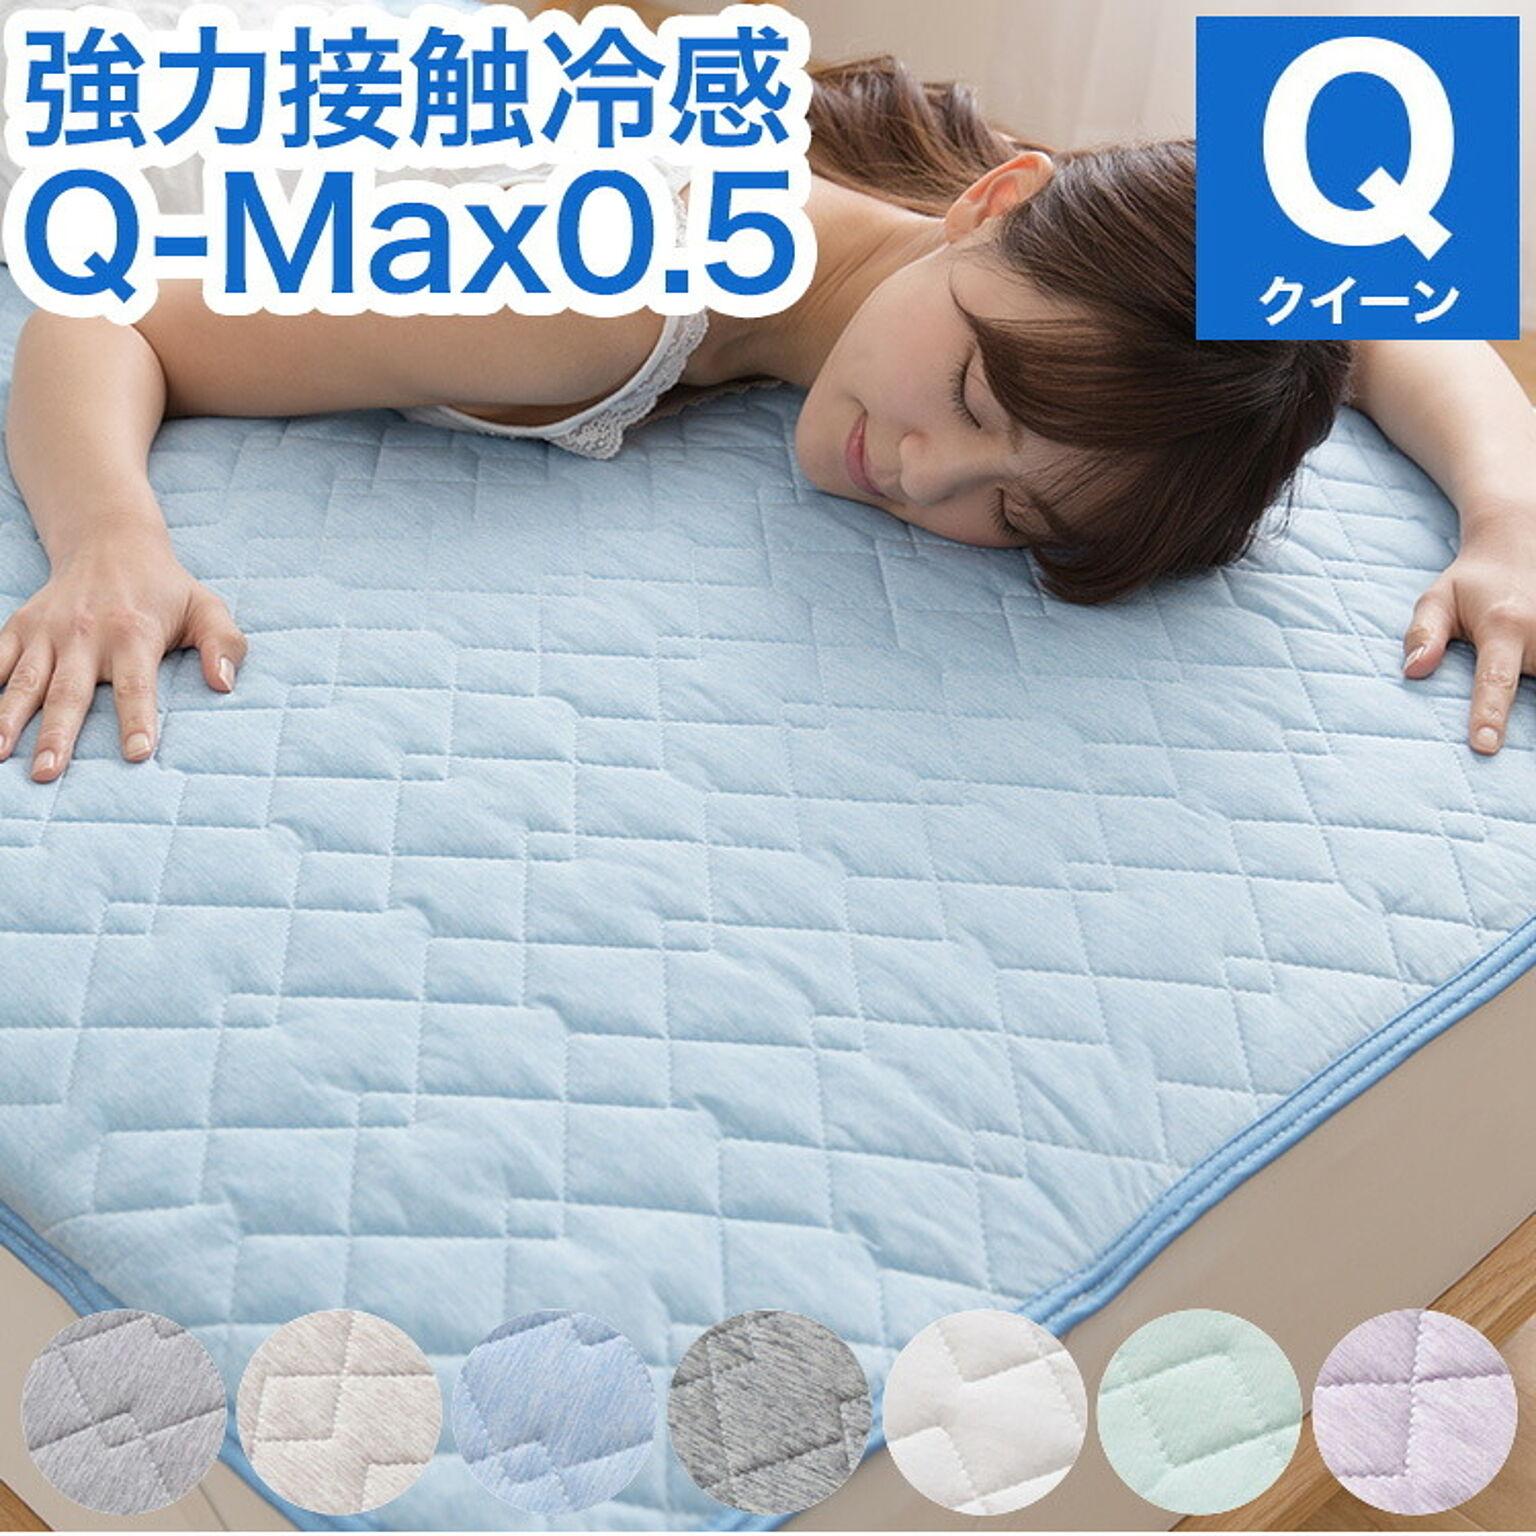 接触冷感 敷きパッド クイーン Q-MAX0.5 リバーシブル 抗菌防臭 冷却 省エネ エコ ひんやり クール 寝具 丸洗い ウォッシャブル